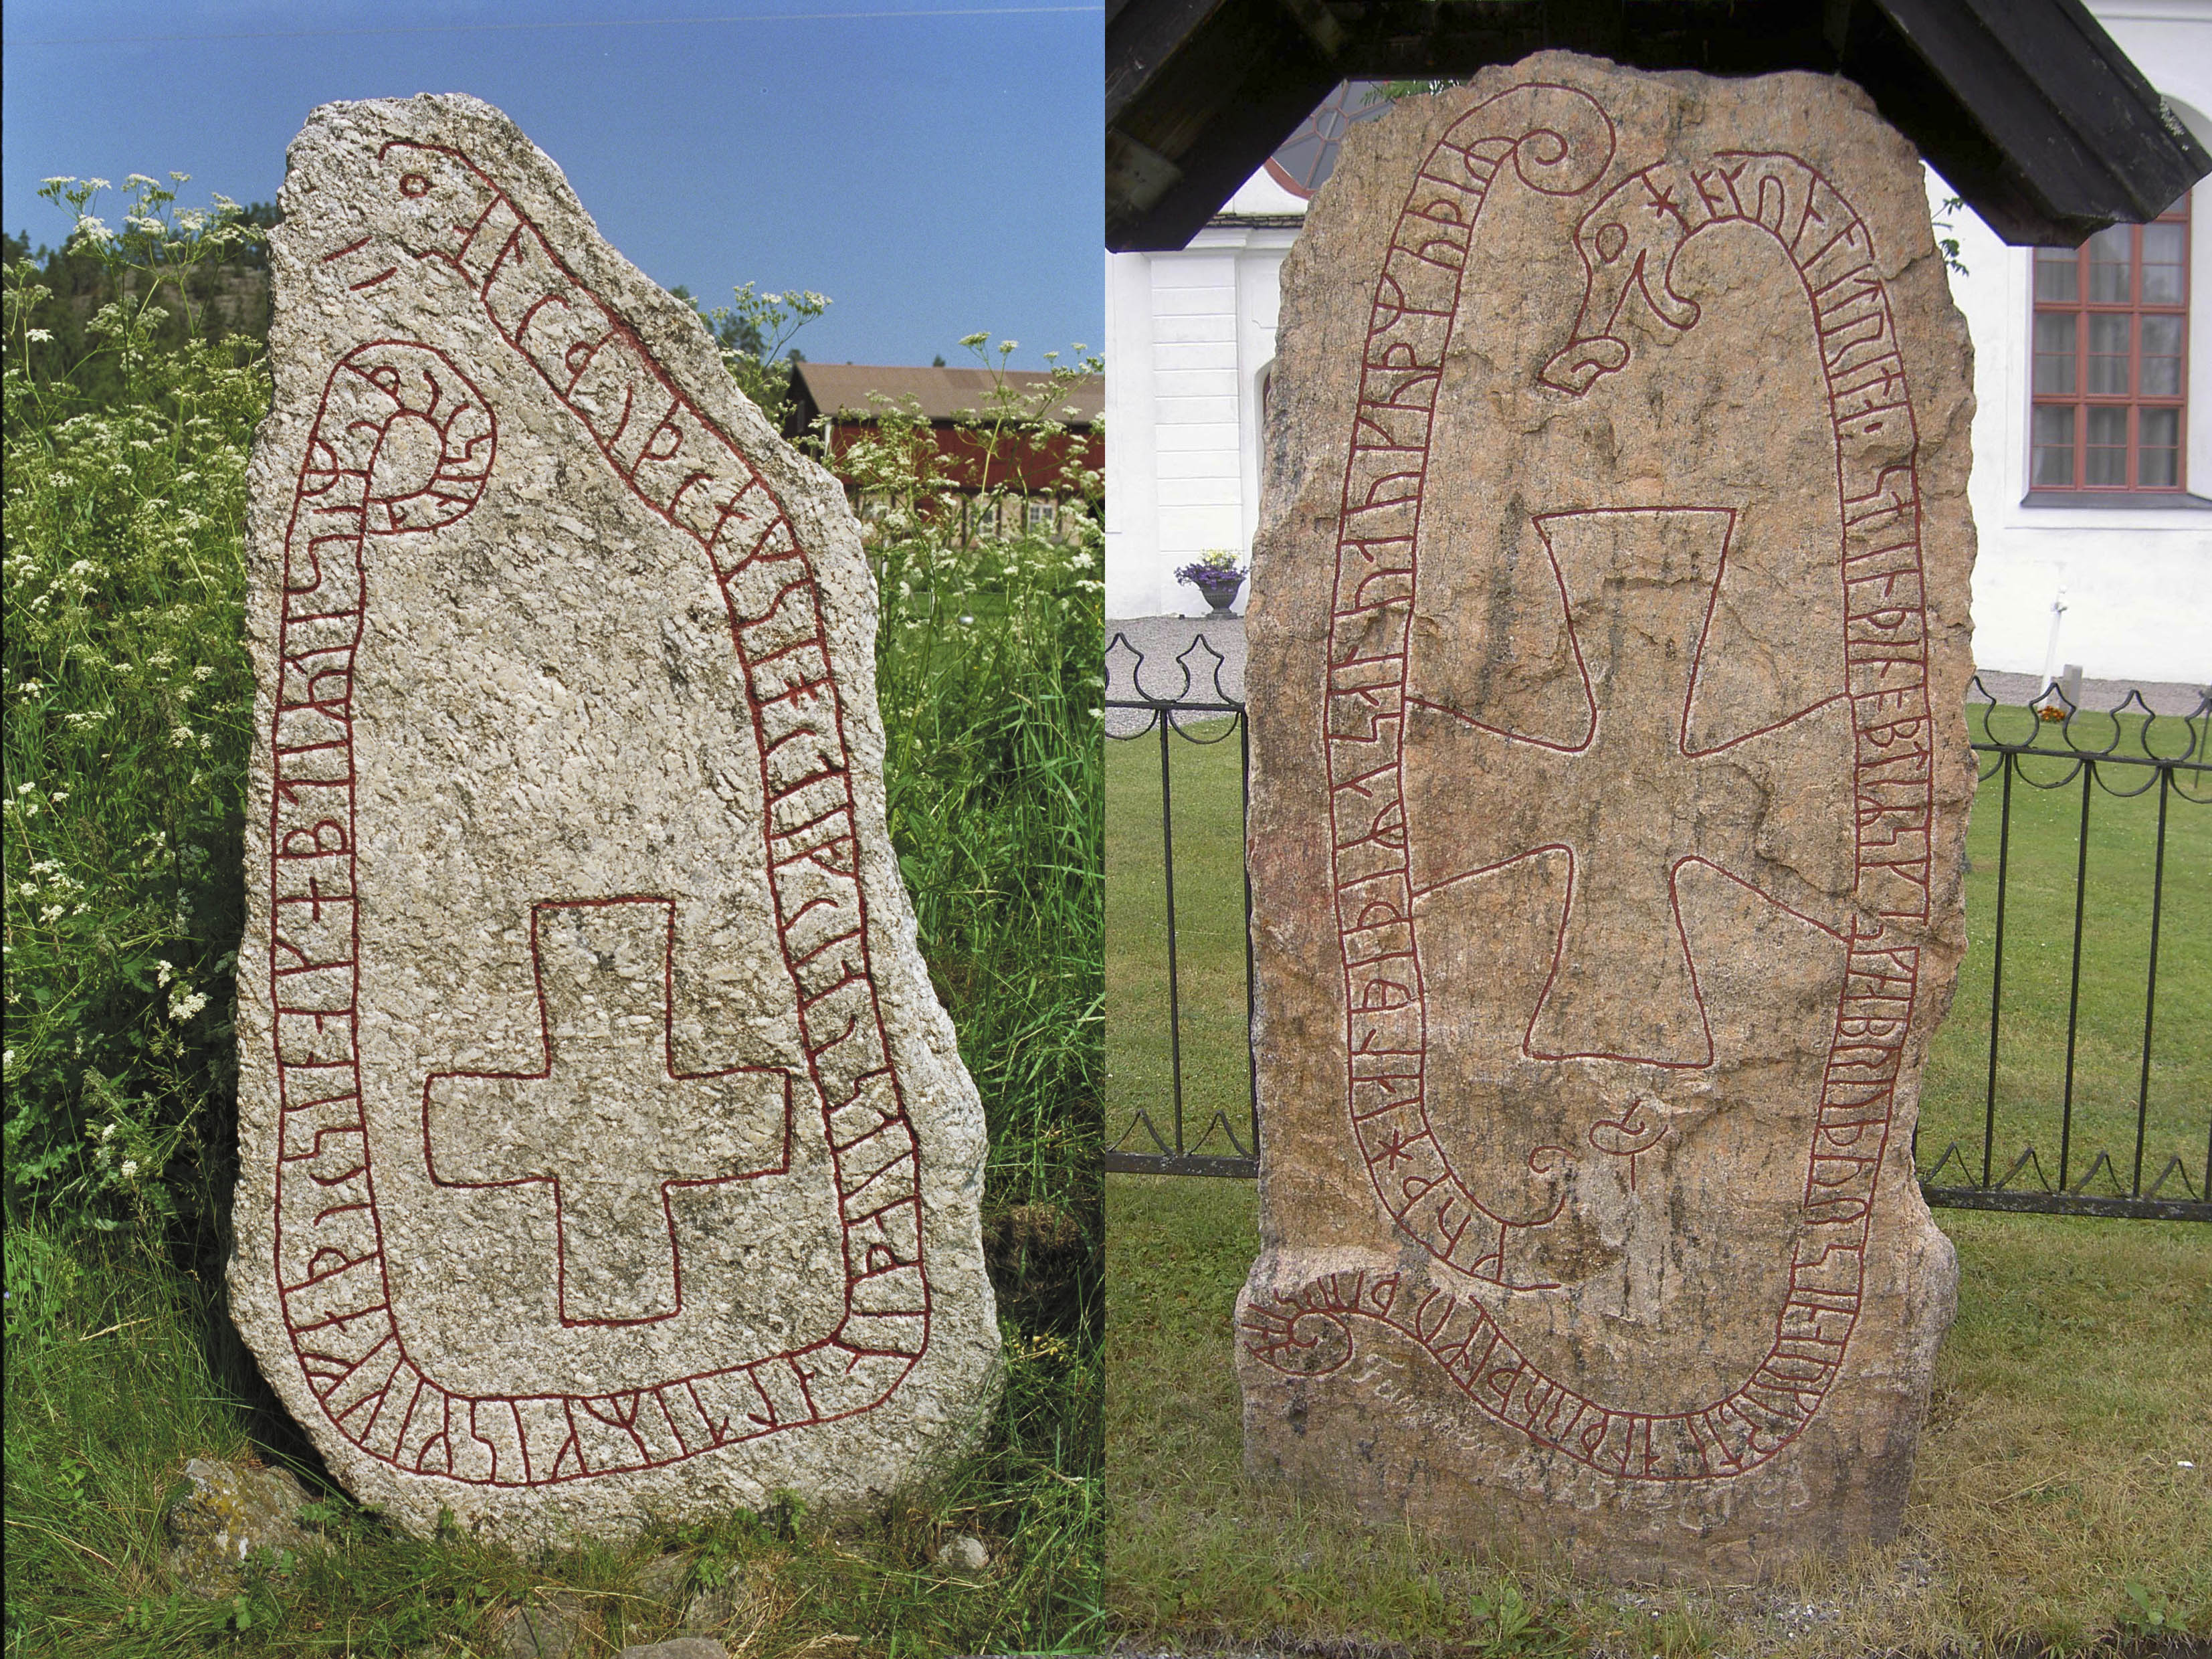 Två runstenarna. En finns vid Berga och en finns vid Attmar. De enda två runinskrifter i världen där kvinnonamnet Altrud förekommer.